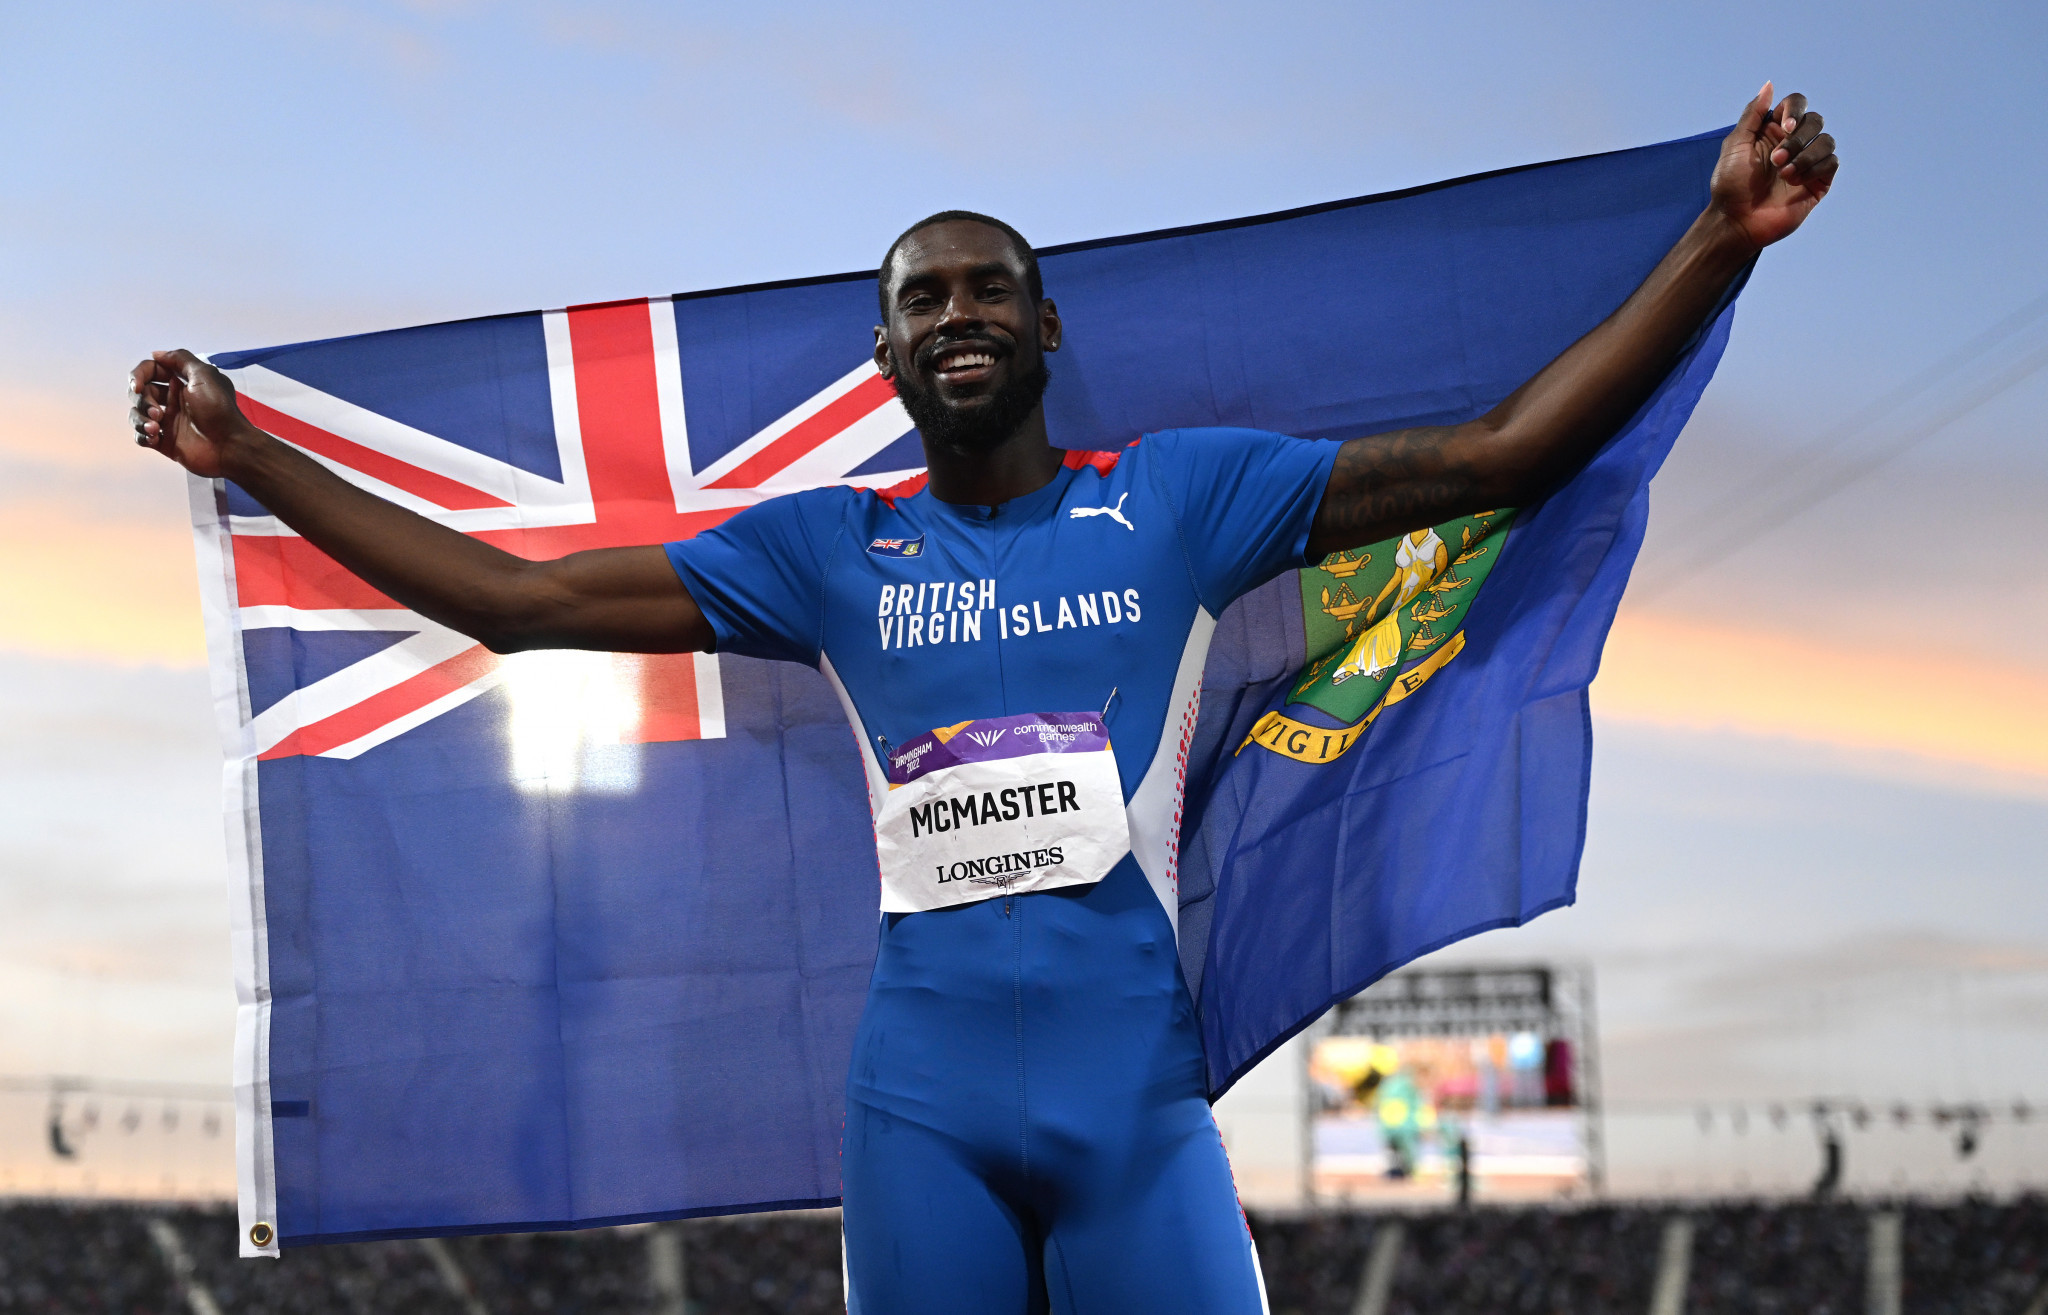 McMaster gives British Virgin Islands golden delight at 2022 NACAC Championships